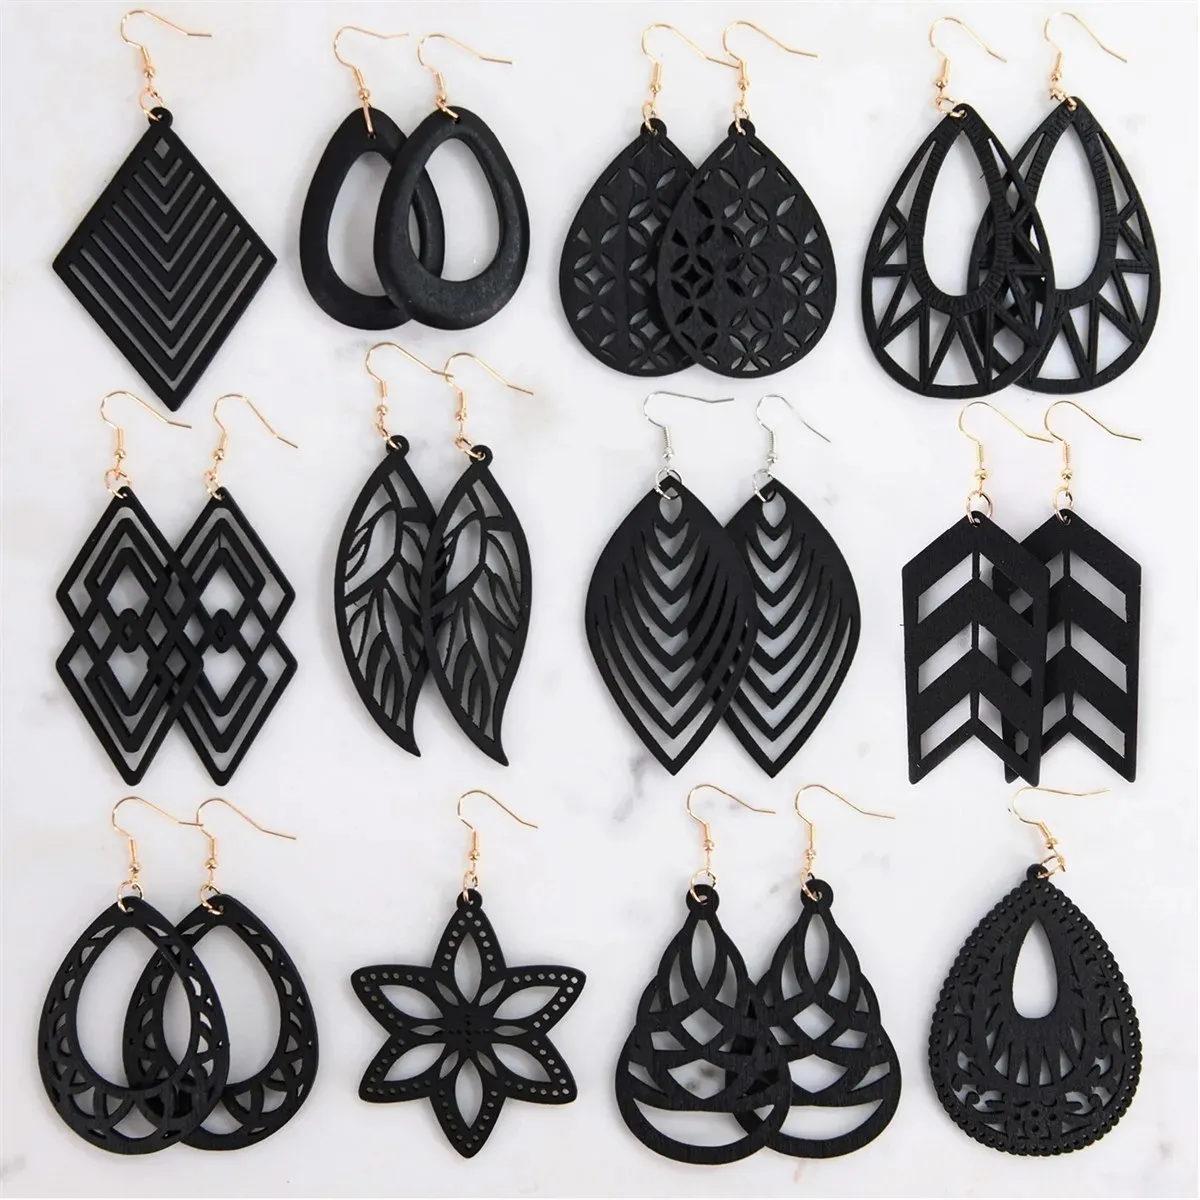 Custom fashion hollow pendant earrings jewelry black wooden earrings